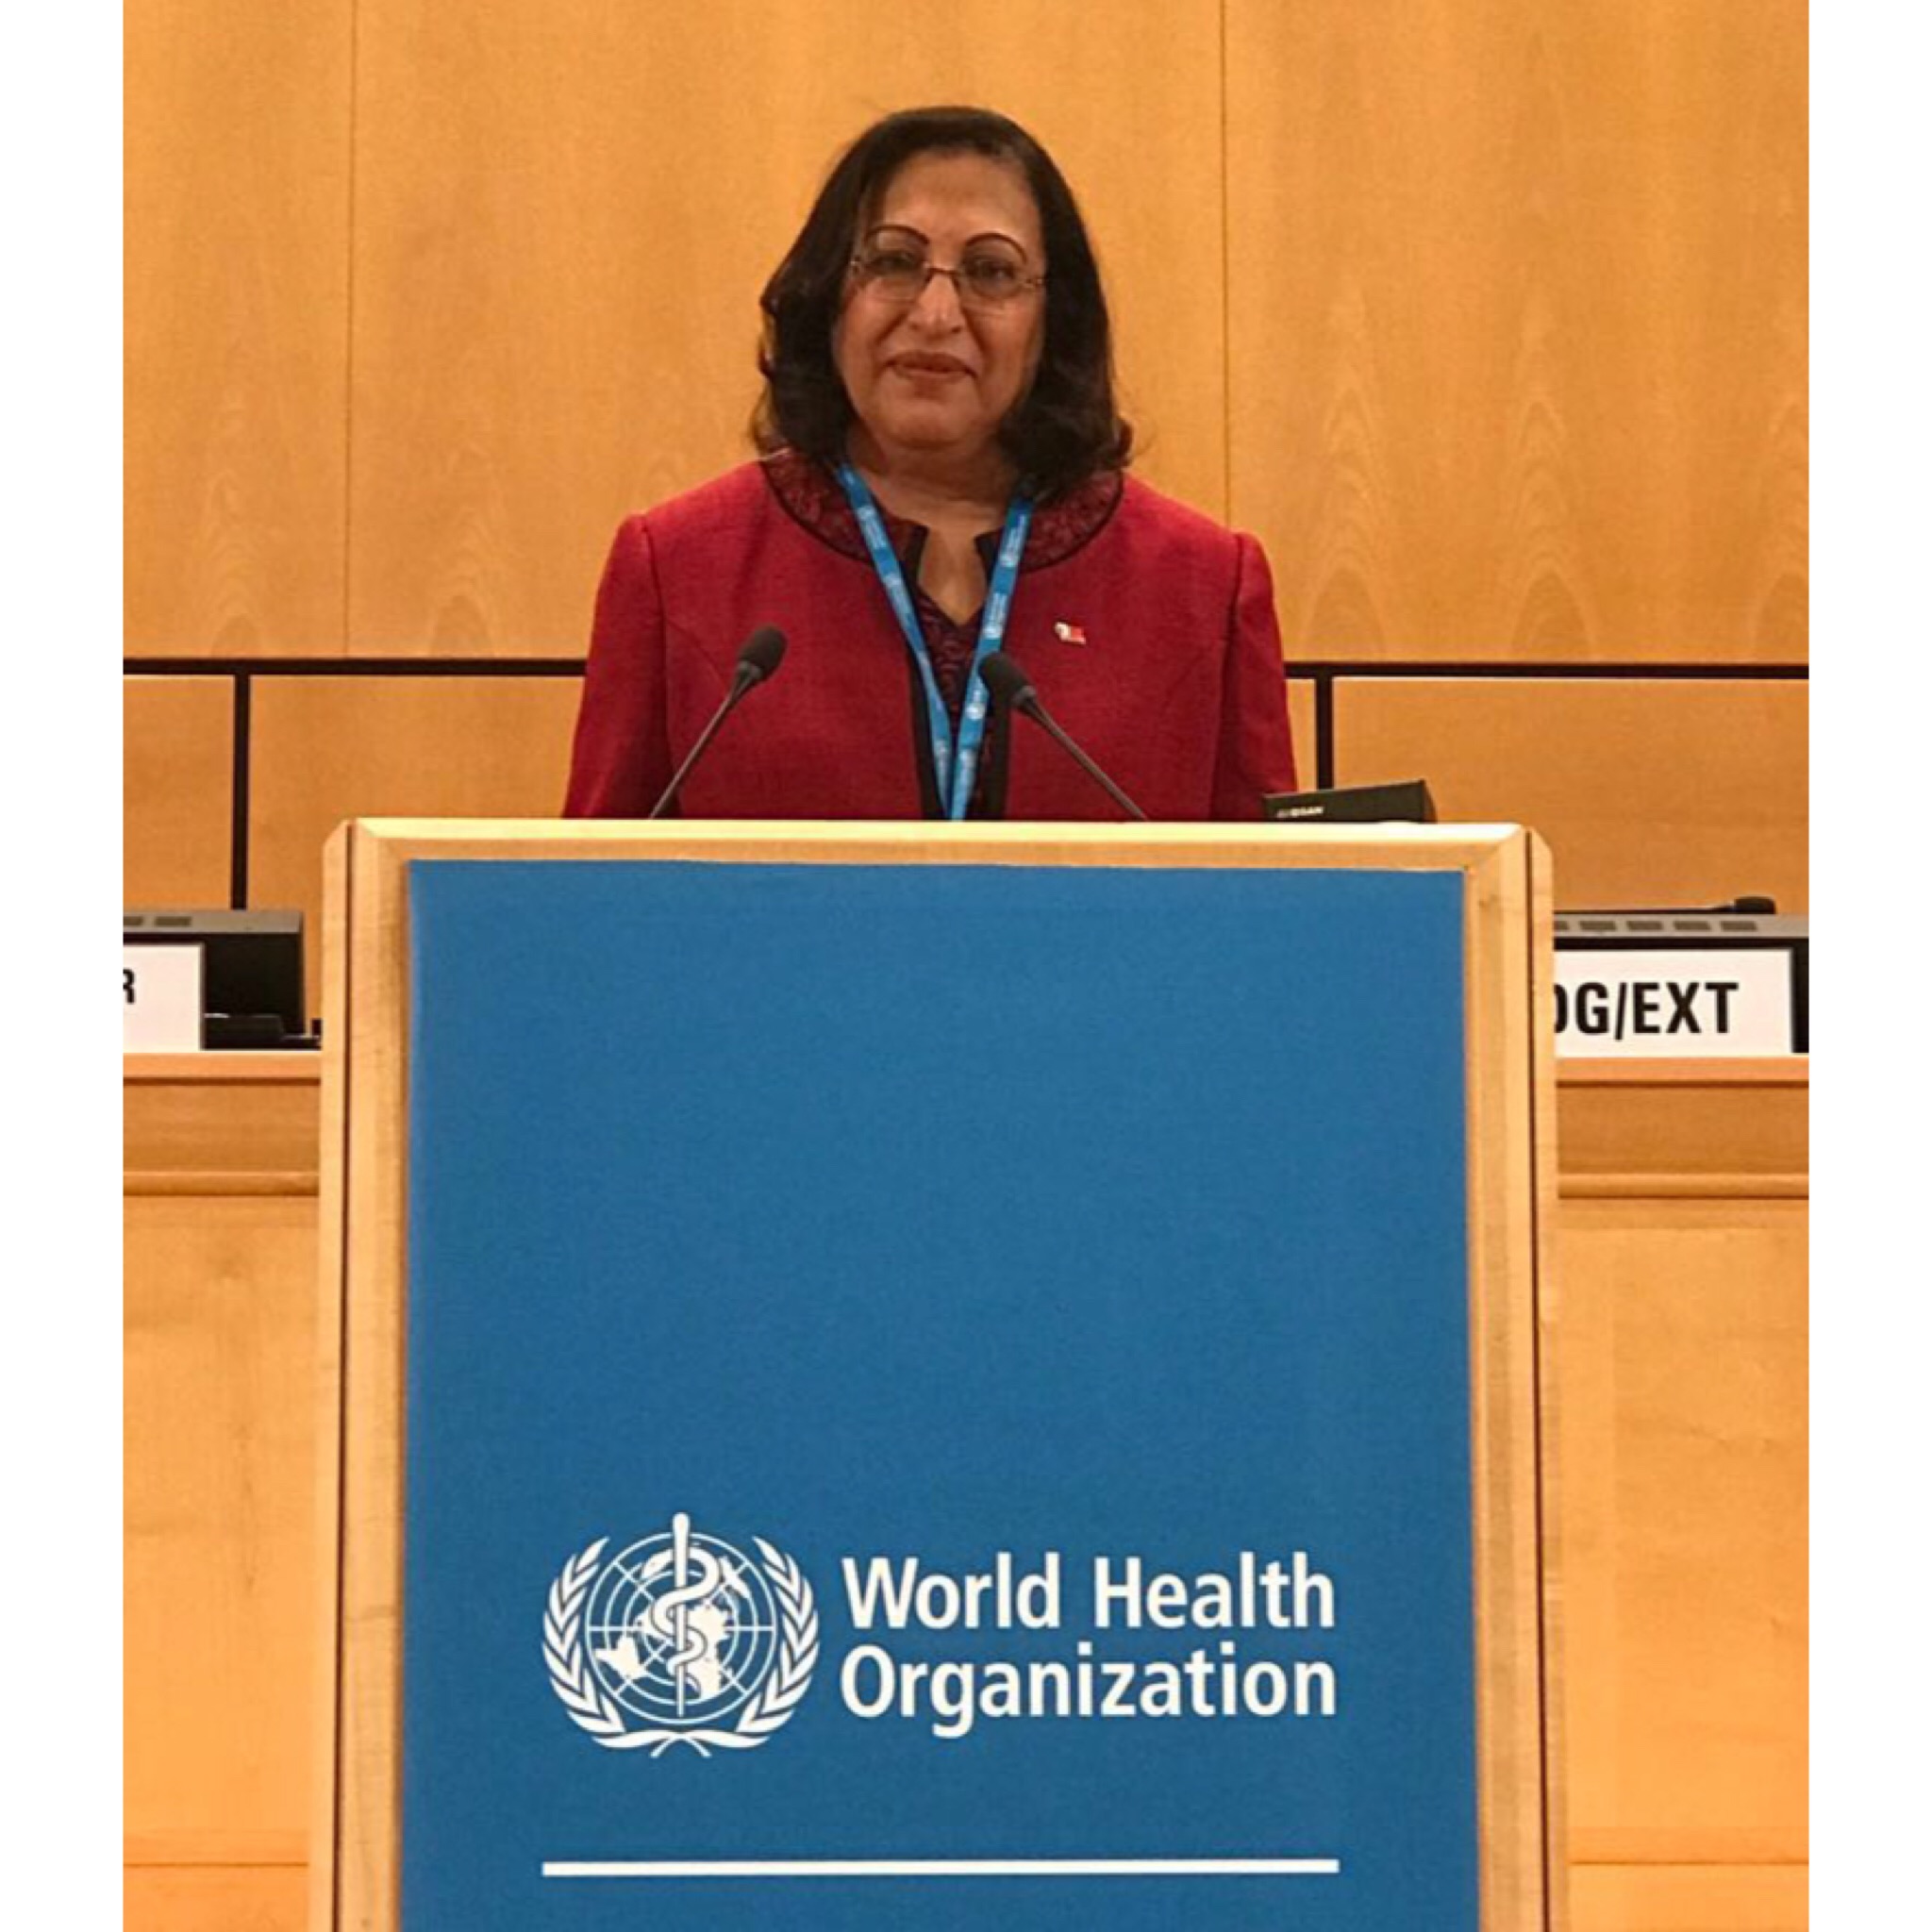 وزيرة الصحة تلقي بيان أمام جمعية الصحة العالمية الحادية والسبعون بجنيف ..  وتؤكد على تقدم النظام الصحي بالبحرين ضمن أفضل الأنظمة الصحية عالمياً .. 